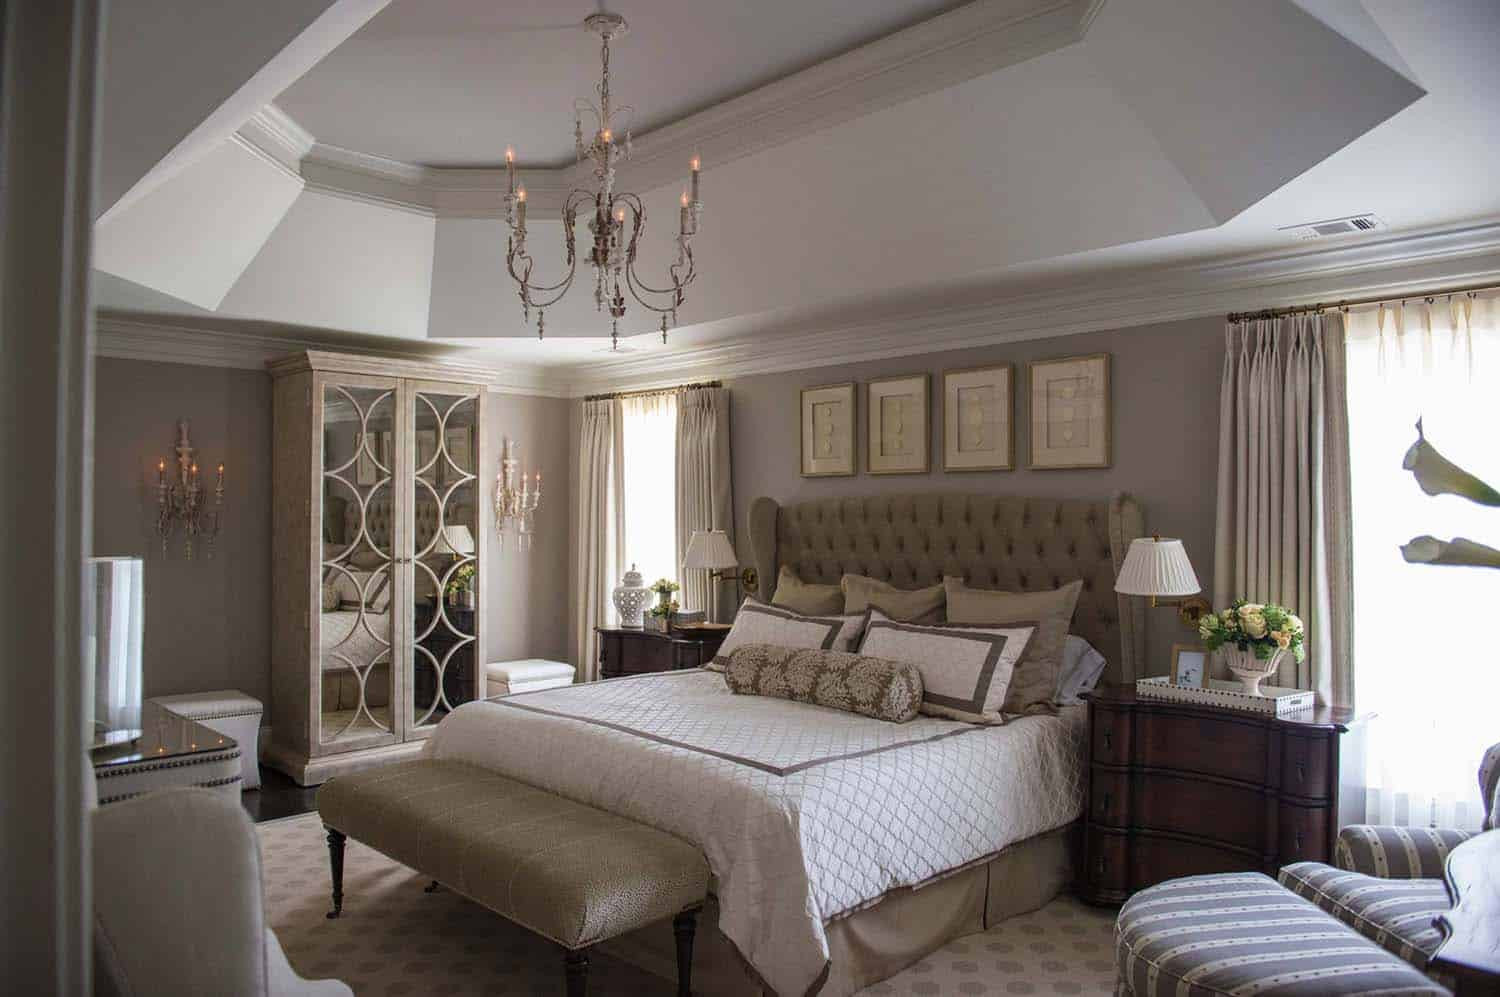 Elegant Bedspreads Master Bedroom
 20 Serene And Elegant Master Bedroom Decorating Ideas